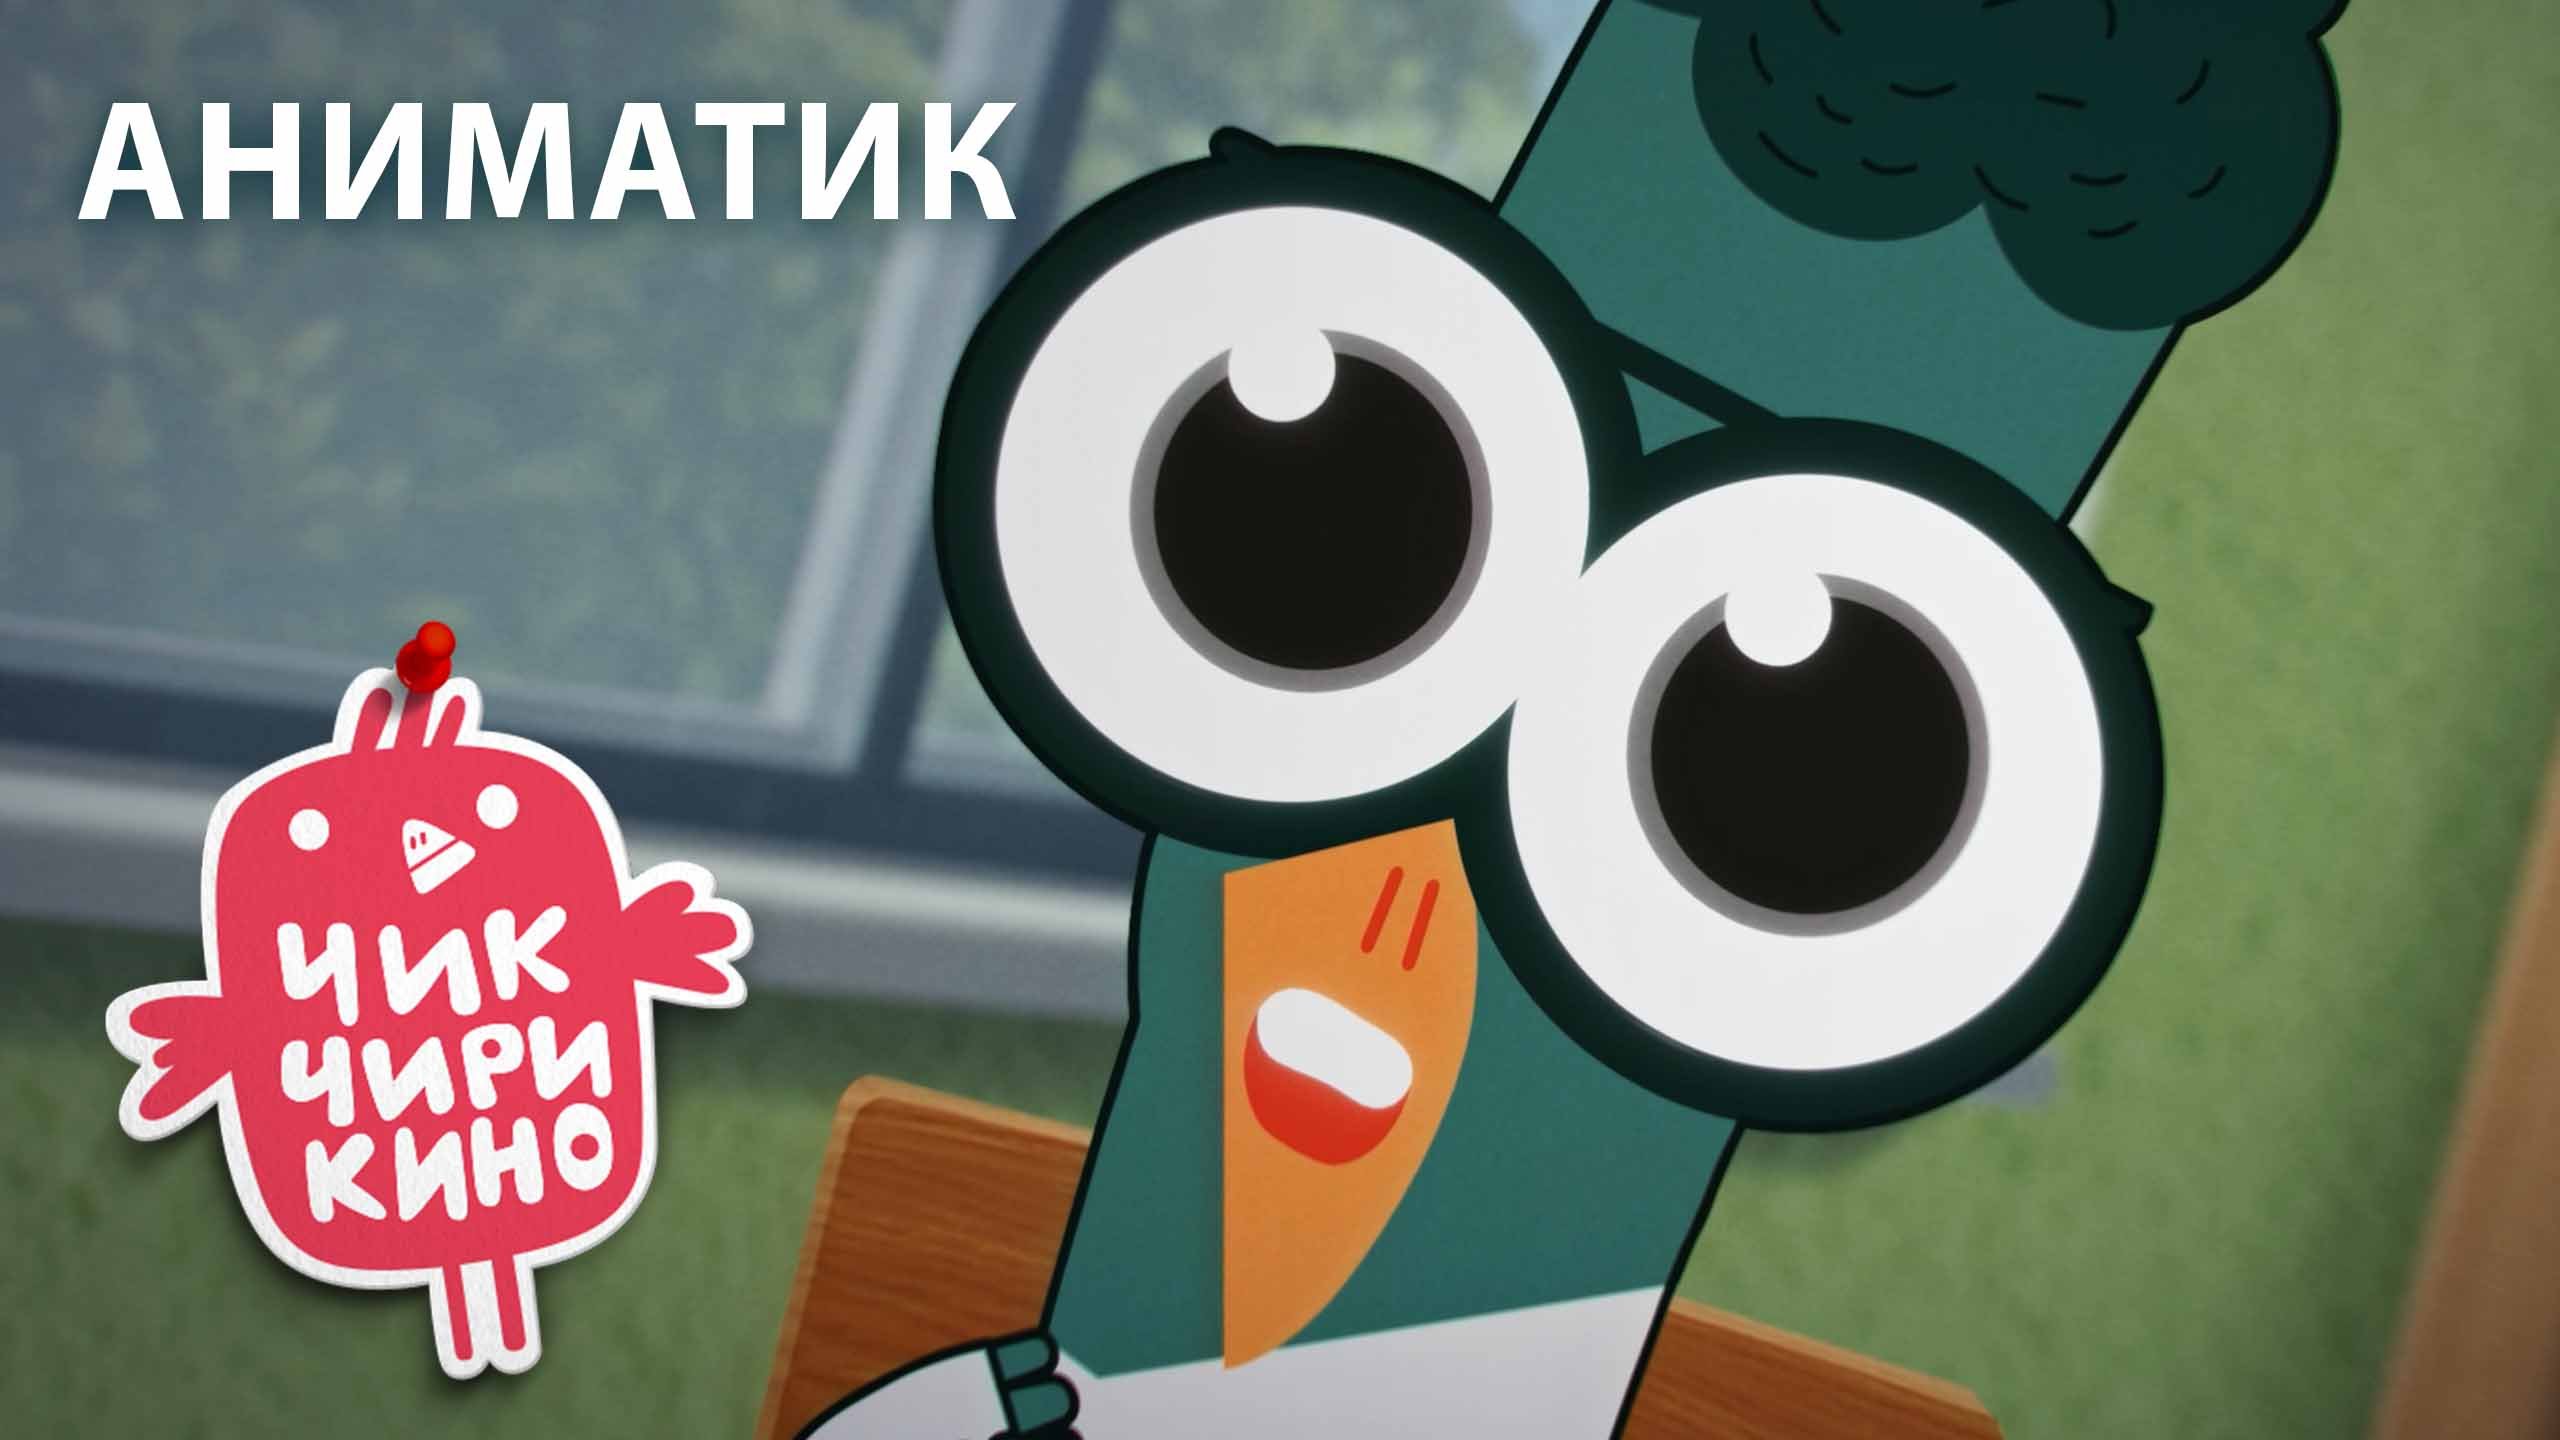 Аниматик «Влюбленный Макс» | Мультсериал «Чик-Чирикино»